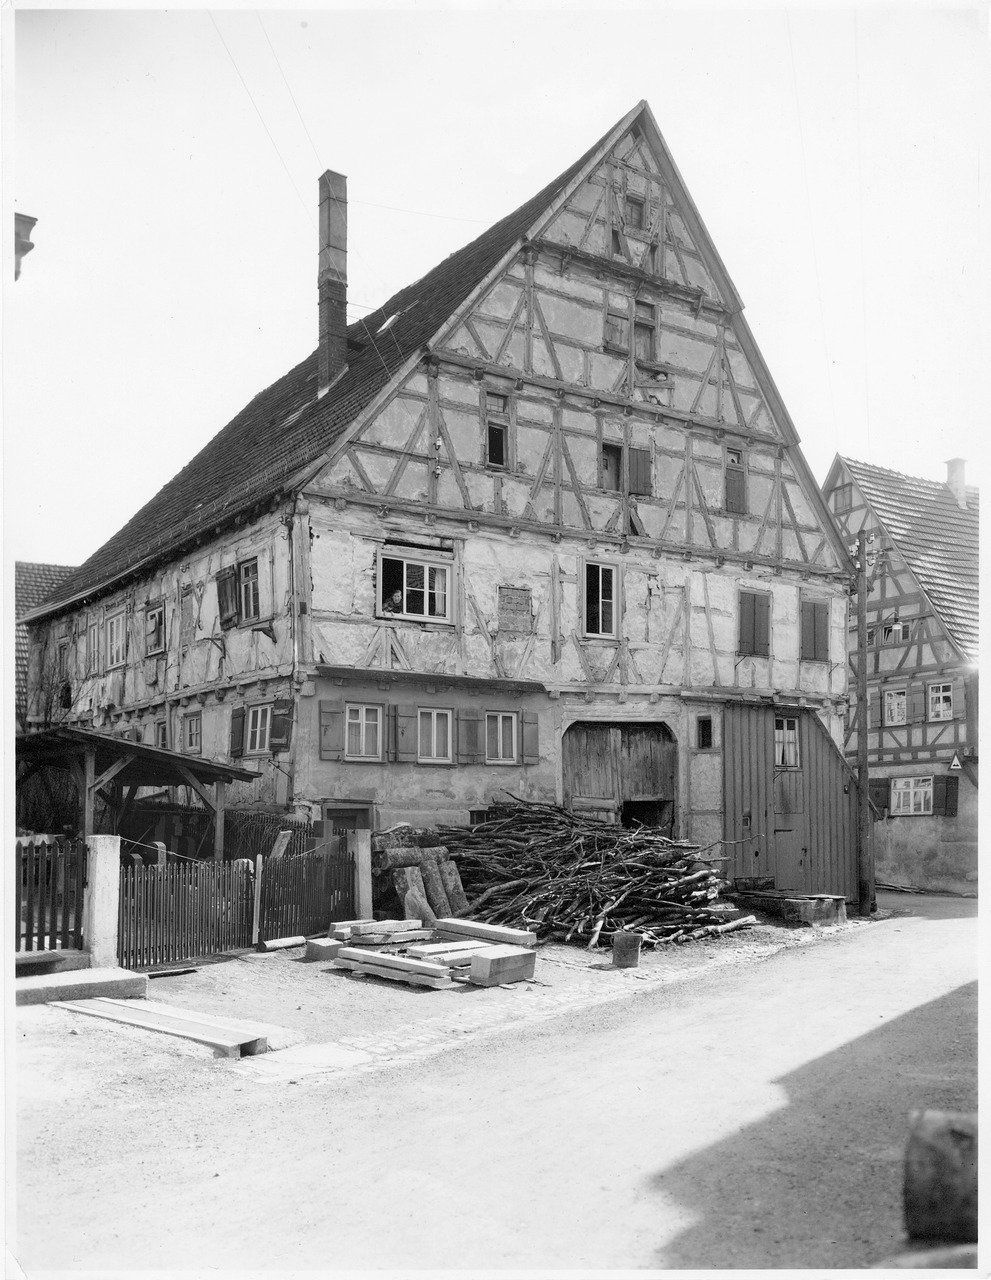 Das Große Haus früher in Münsinge im Biosphärengebiet Schwäbische Alb. Ein Fachwerkhaus in schwarz weiß, dessen Fassade schon leicht zerfallen ist. Links davon ein Gartenzaun, davor ein Holzstapel.